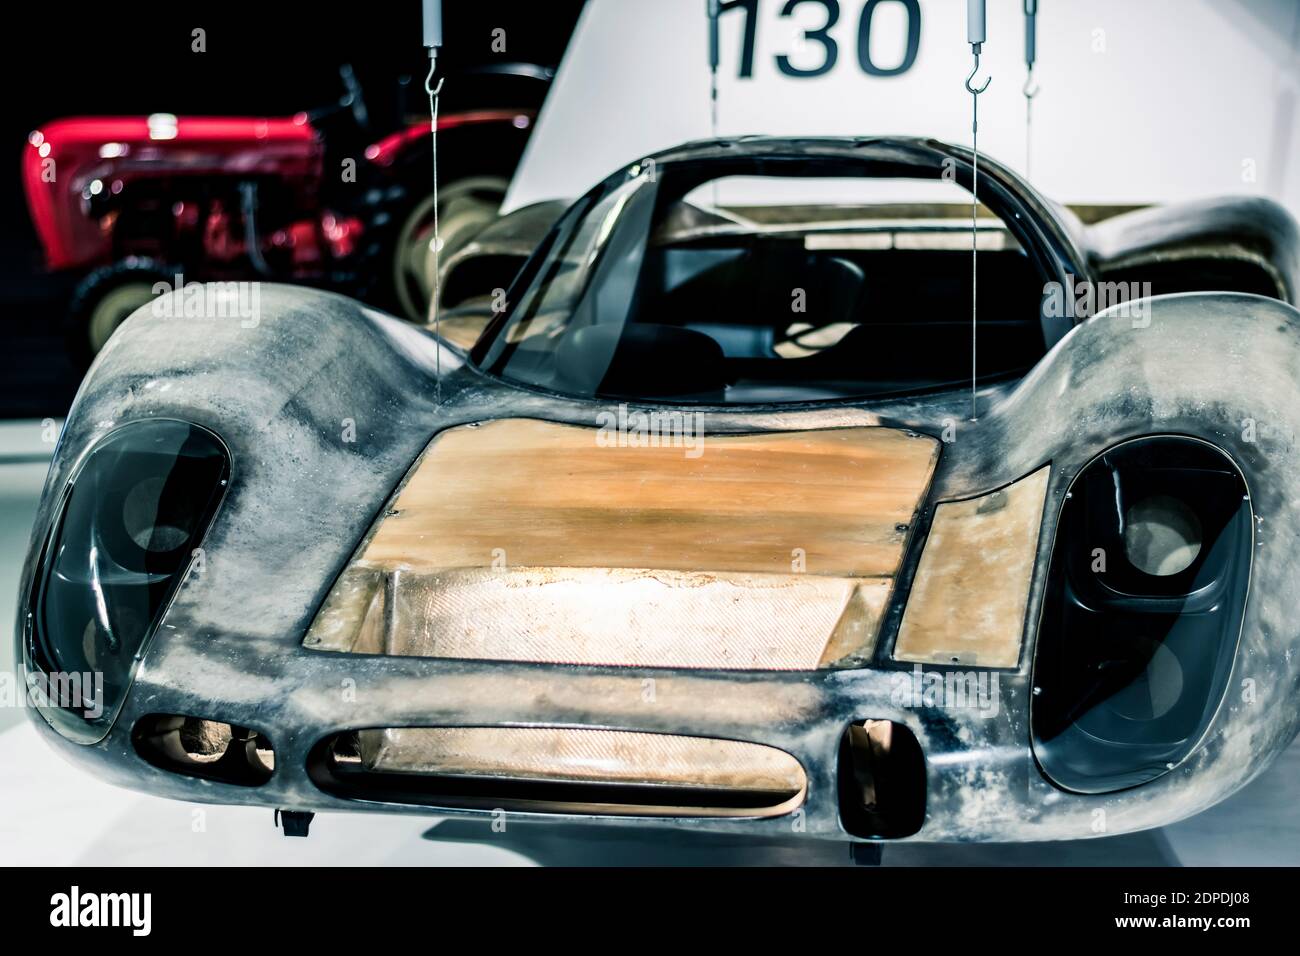 STOCCARDA, Germania 6 marzo 2020: La Porsche 908 era una vettura da corsa della Porsche, introdotta nel 1968 Foto Stock